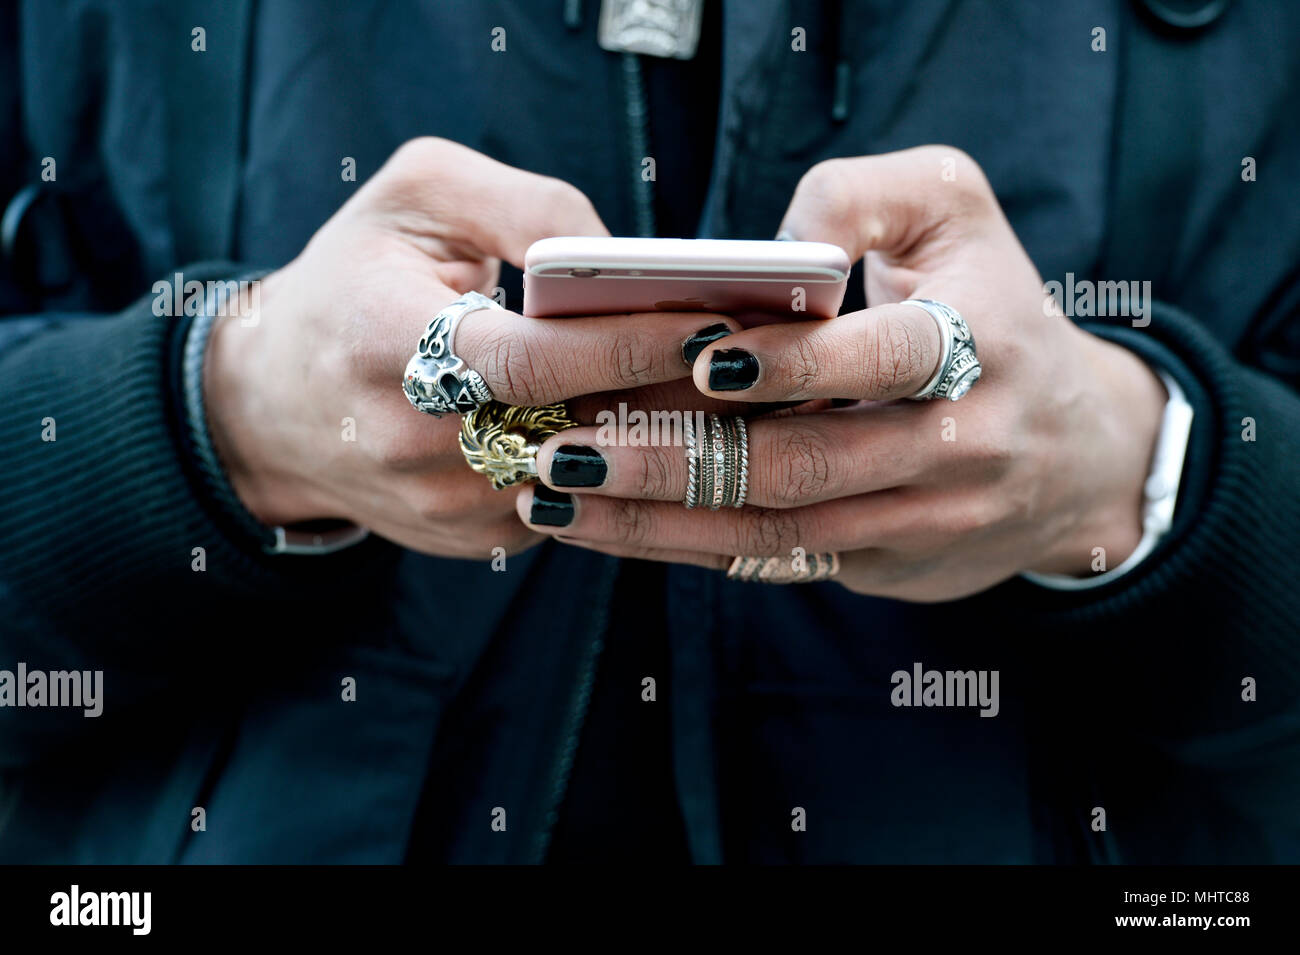 Un uomo con le mani piene di anelli per manipolare un smartphone - Parigi -  Francia Foto stock - Alamy